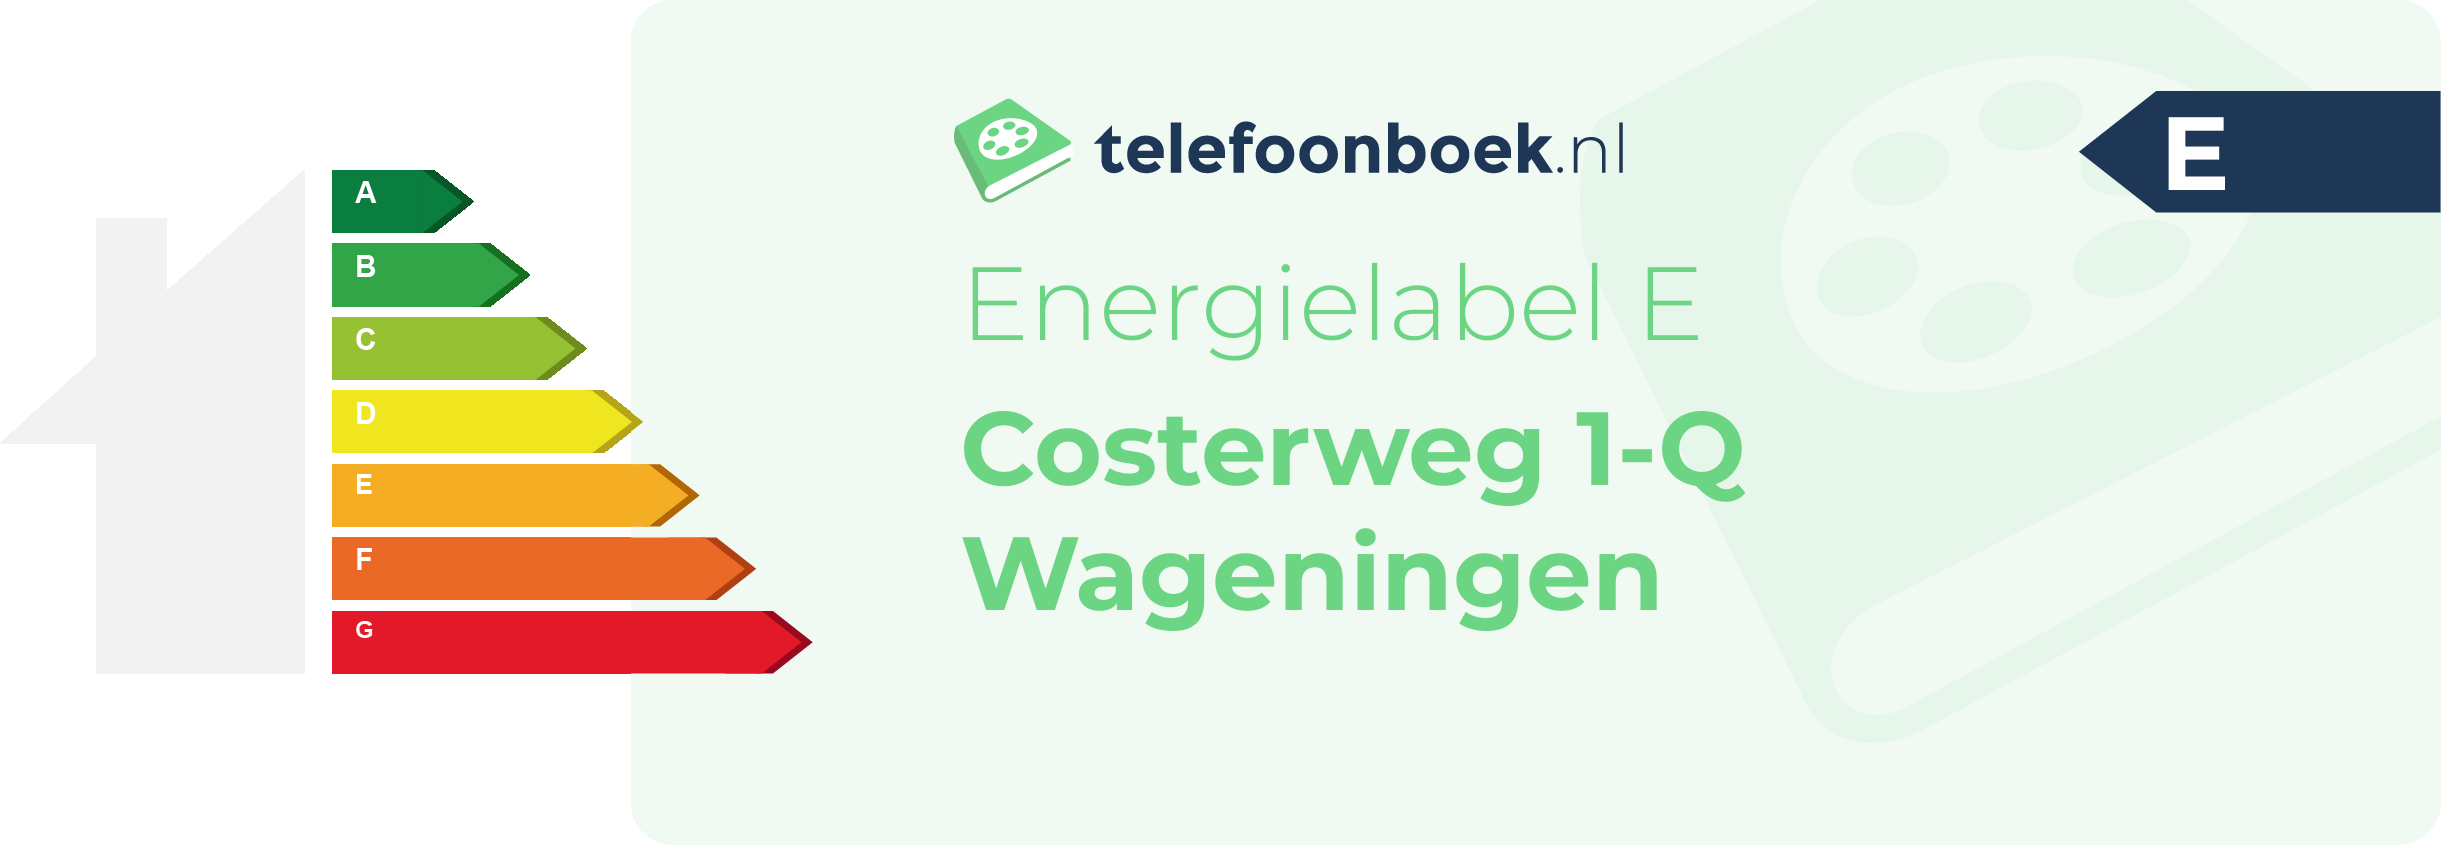 Energielabel Costerweg 1-Q Wageningen